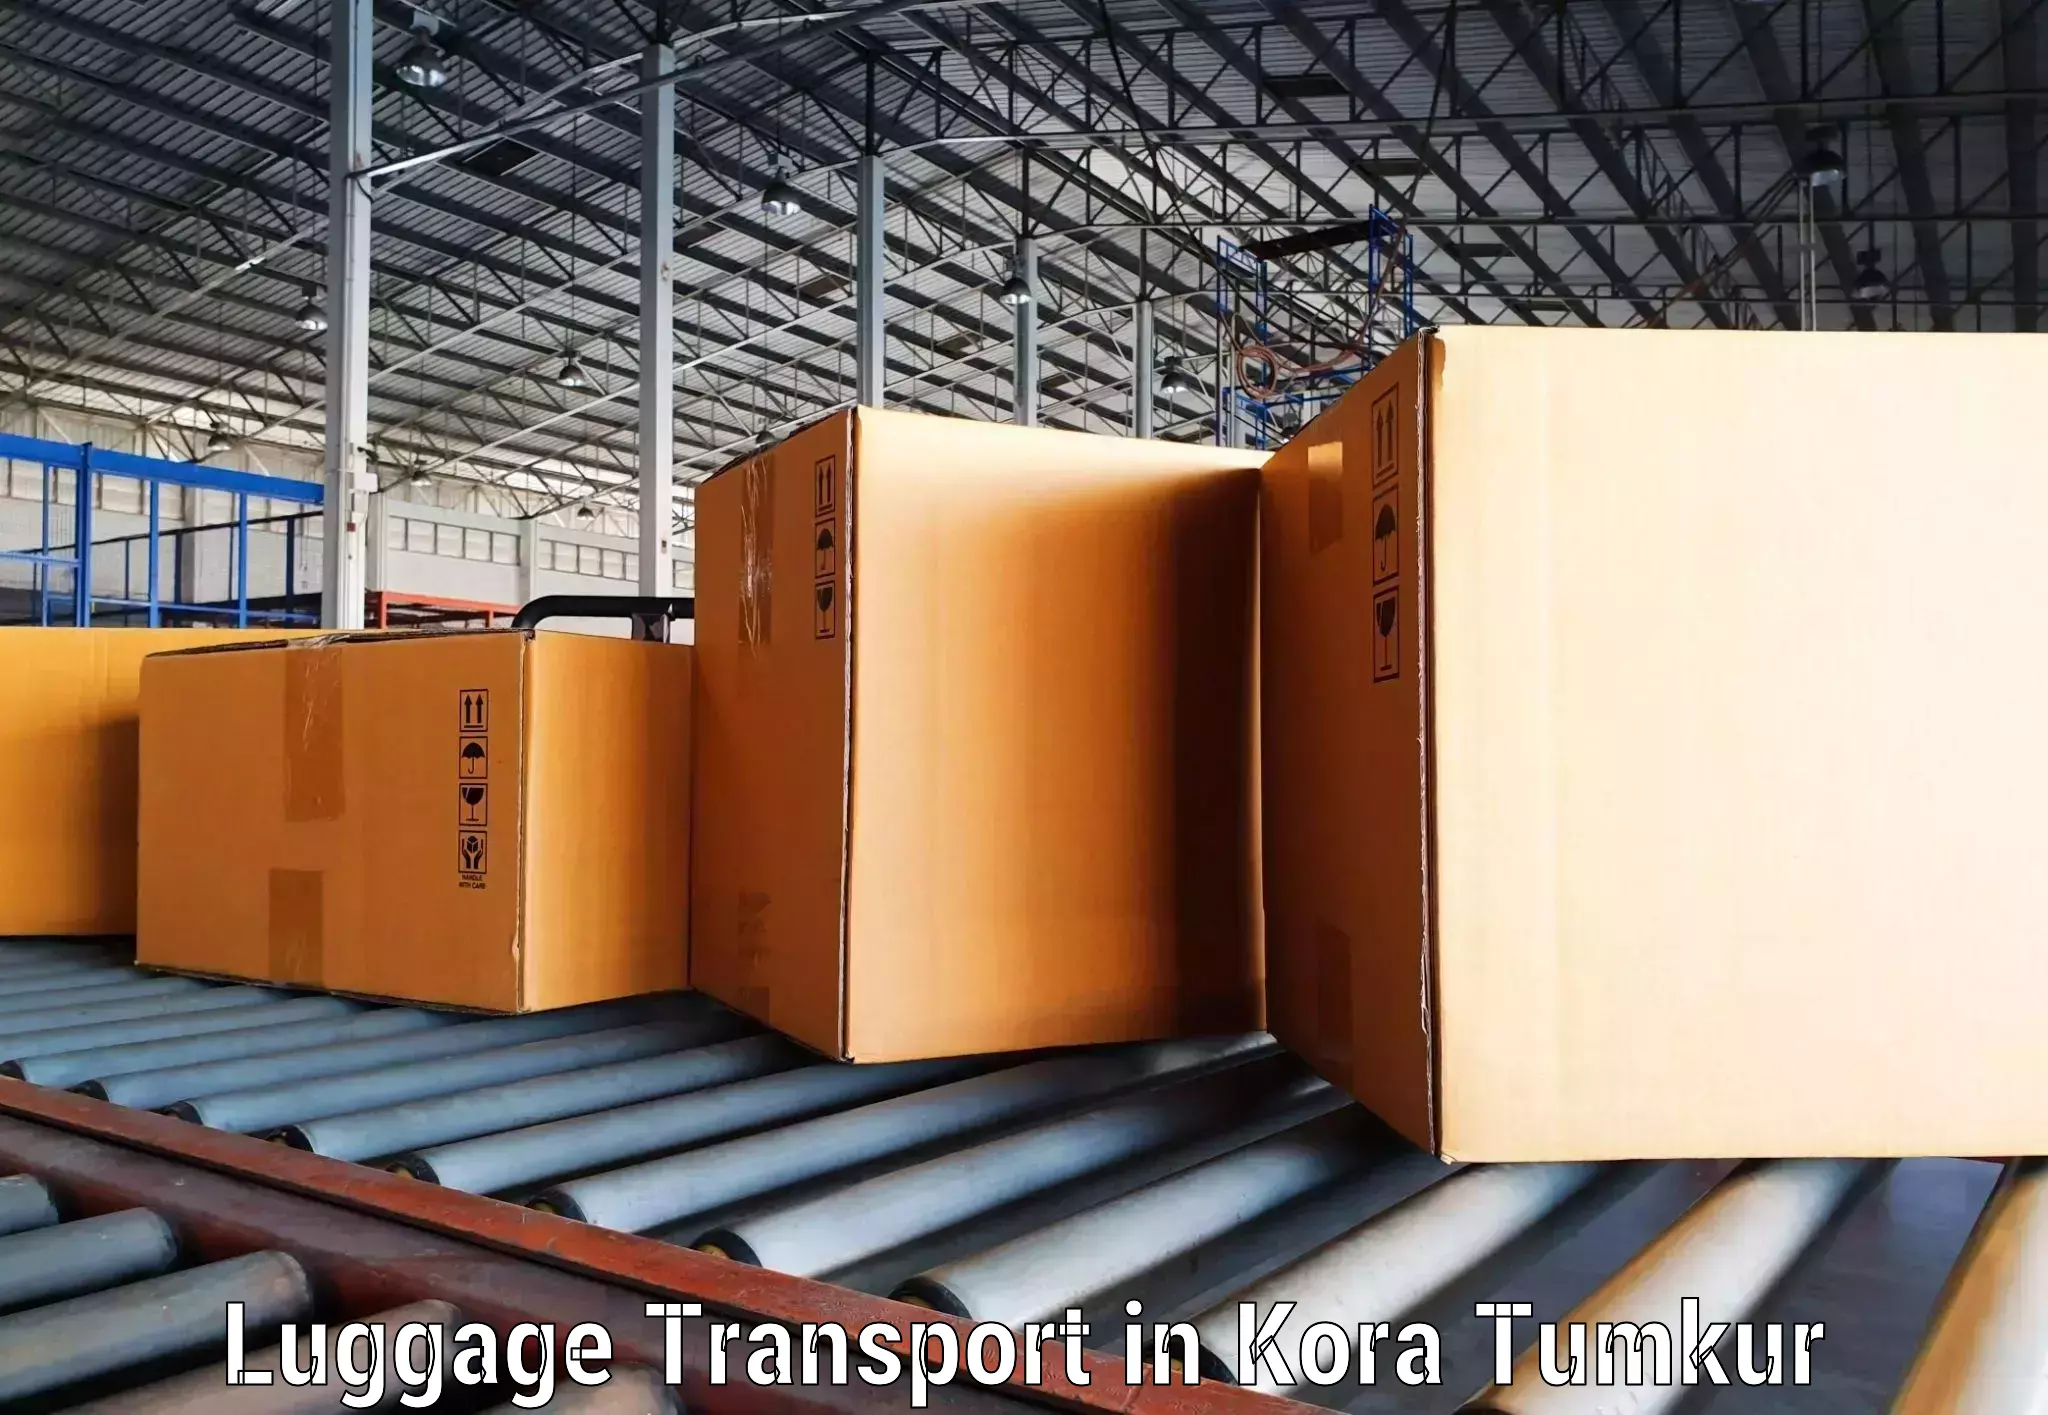 Baggage transport technology in Kora Tumkur